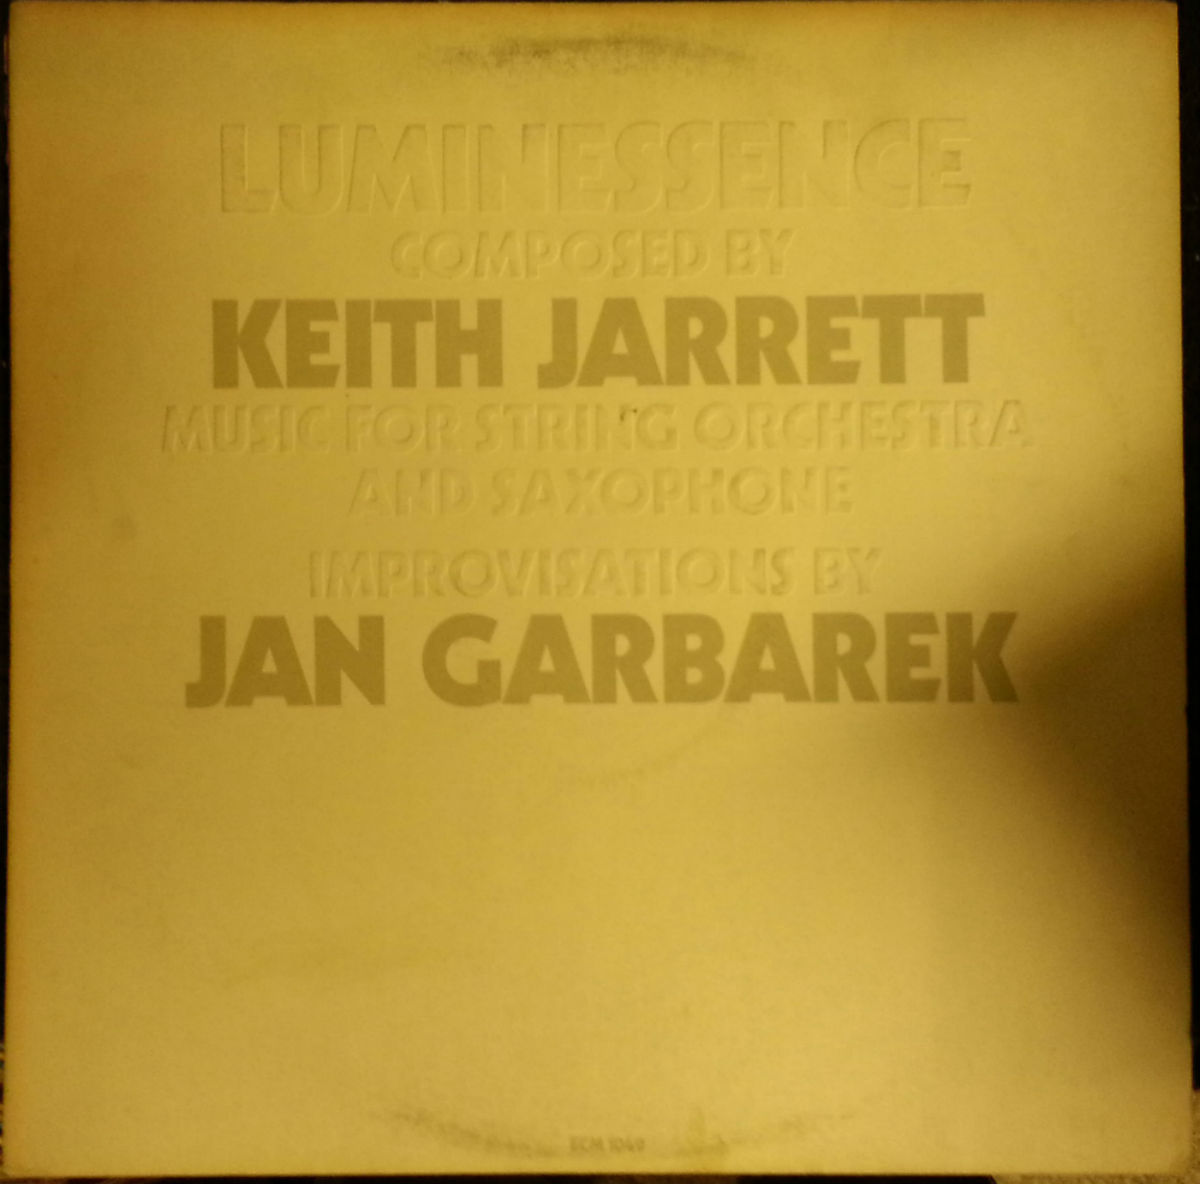 Keith Jarrett / Luminessence